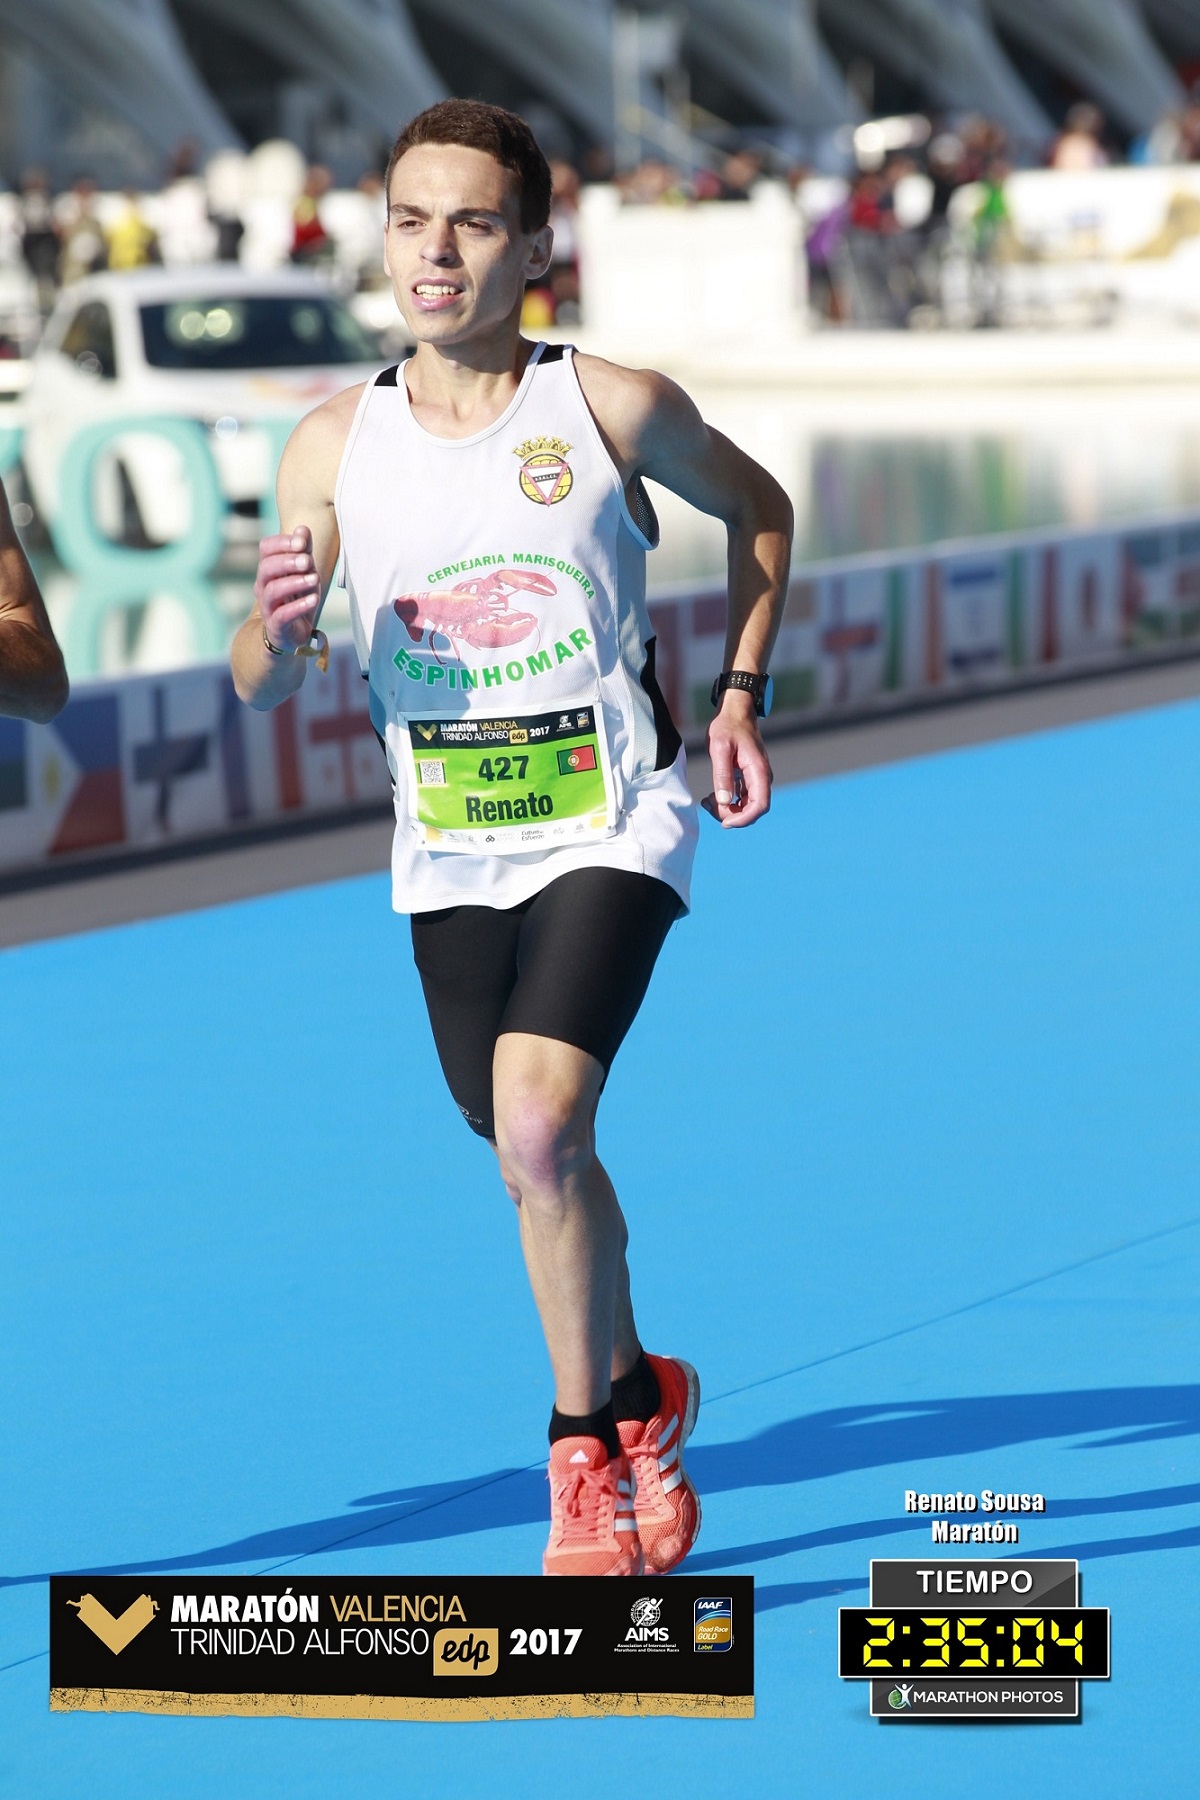 Maratón Valencia Trinidad Alfonso 2017 - Renato Sousa